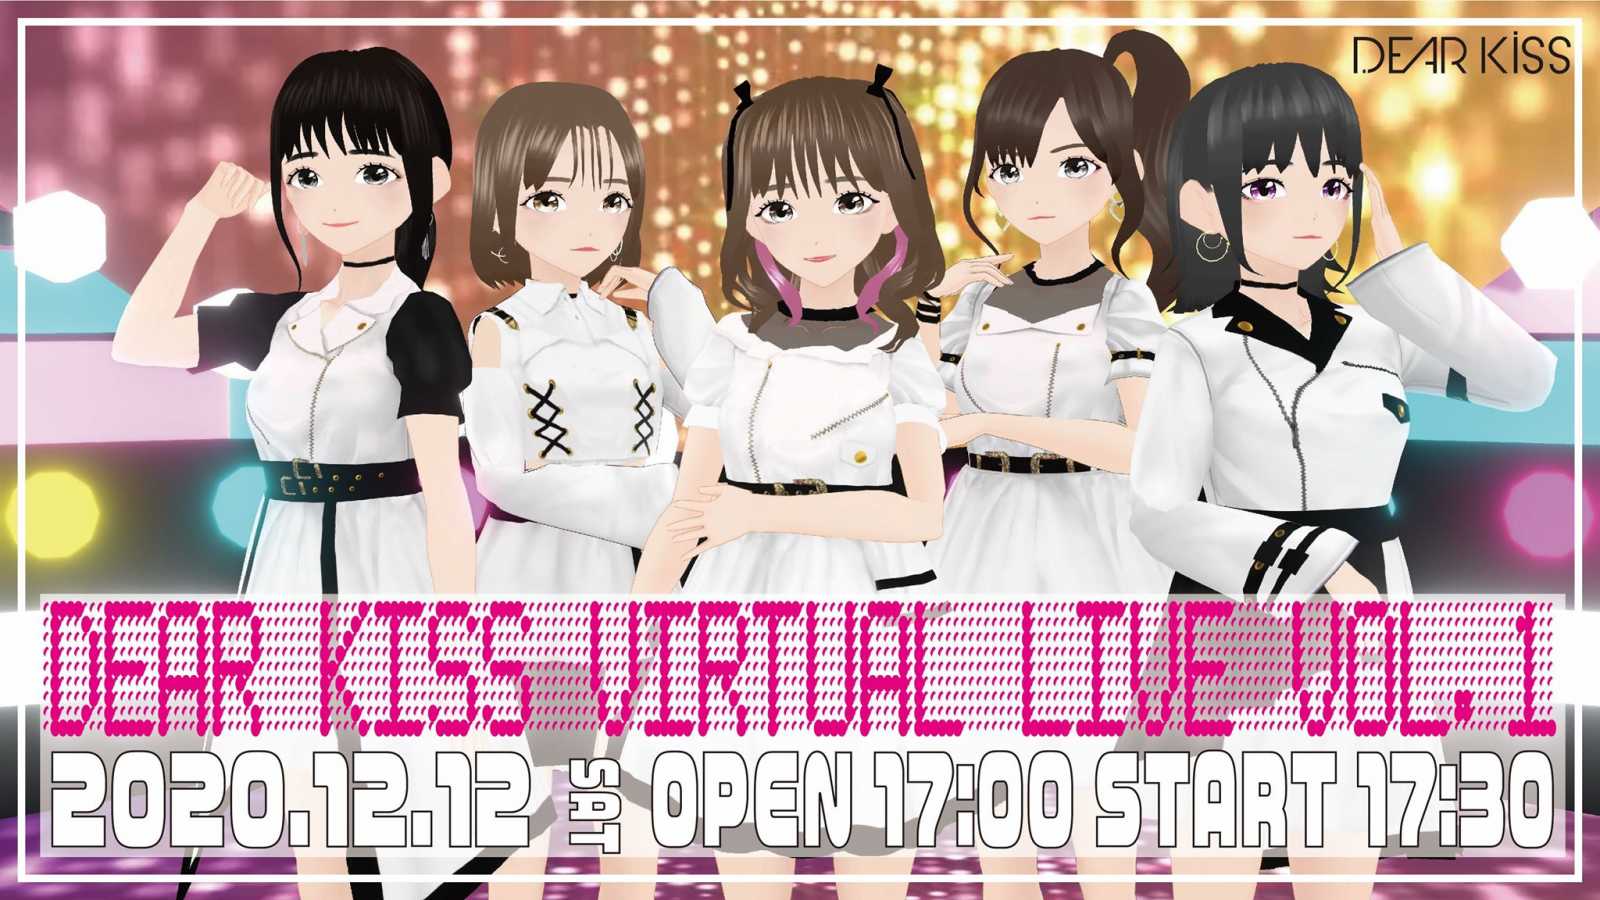 Concert virtuel en ligne de DEAR KISS © DEAR KISS. All rights reserved.